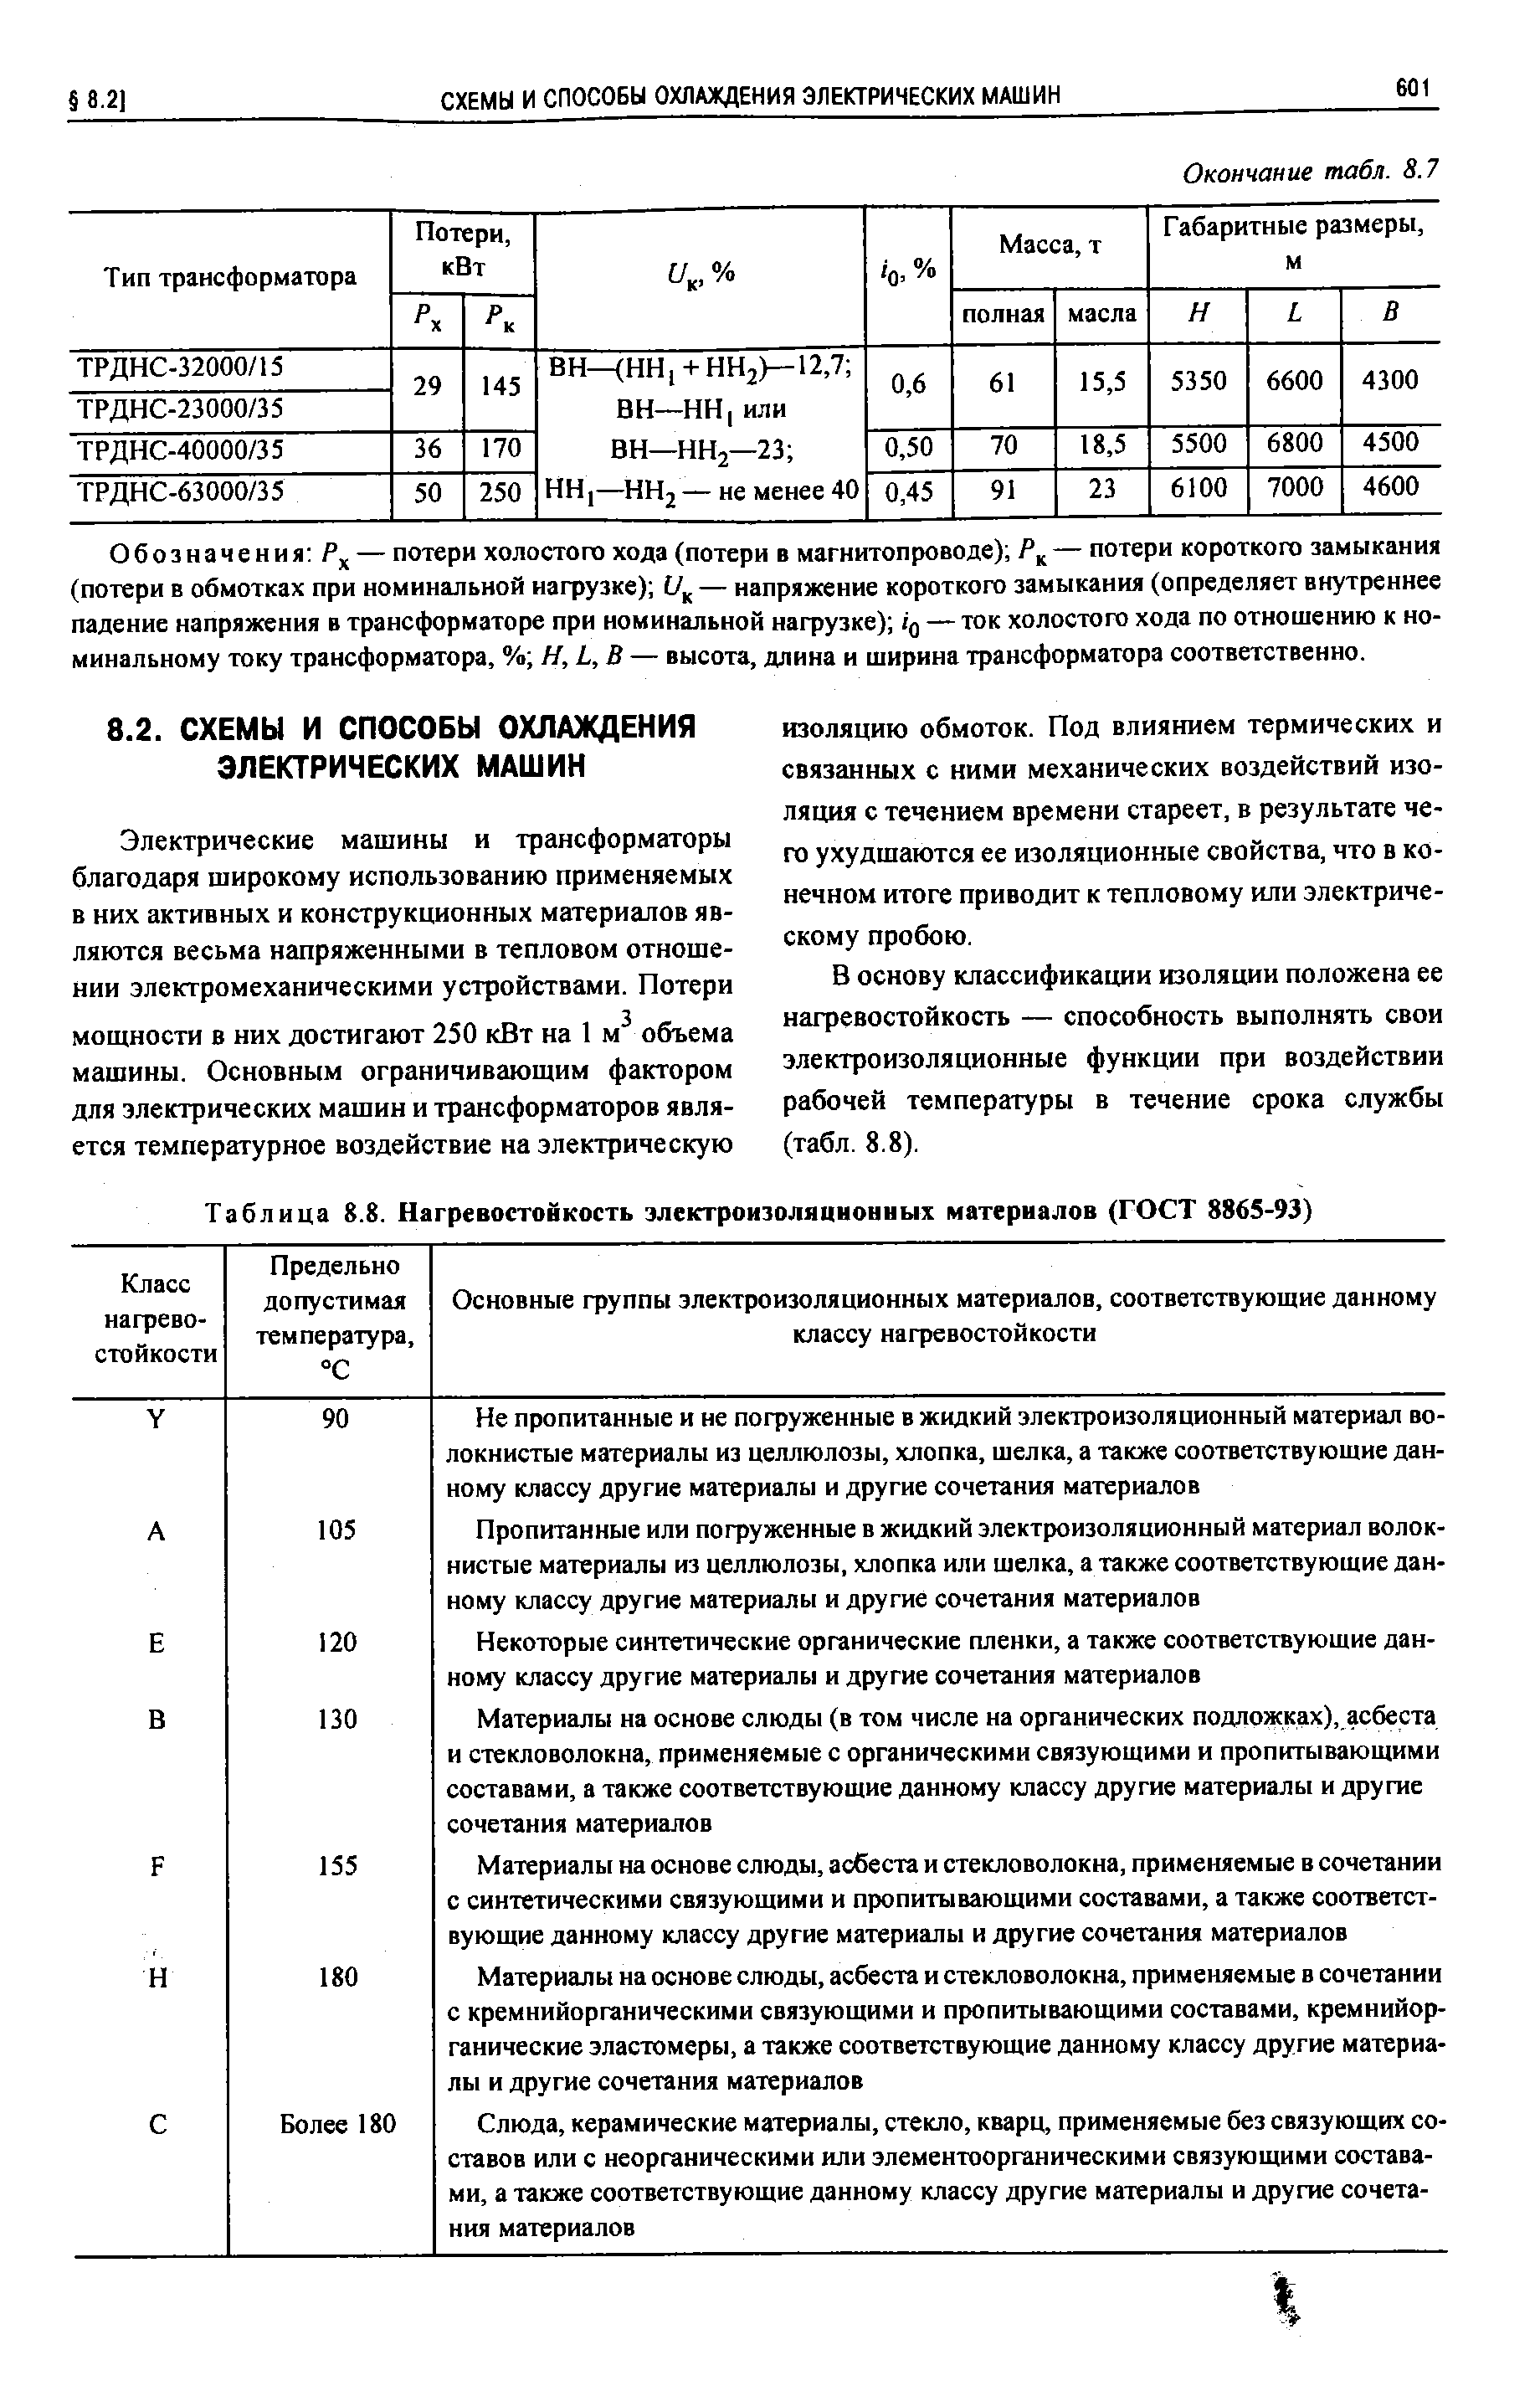 Таблица 8.8. Нагревостойкость электроизоляционных материалов (ГОСТ 8865-93)
